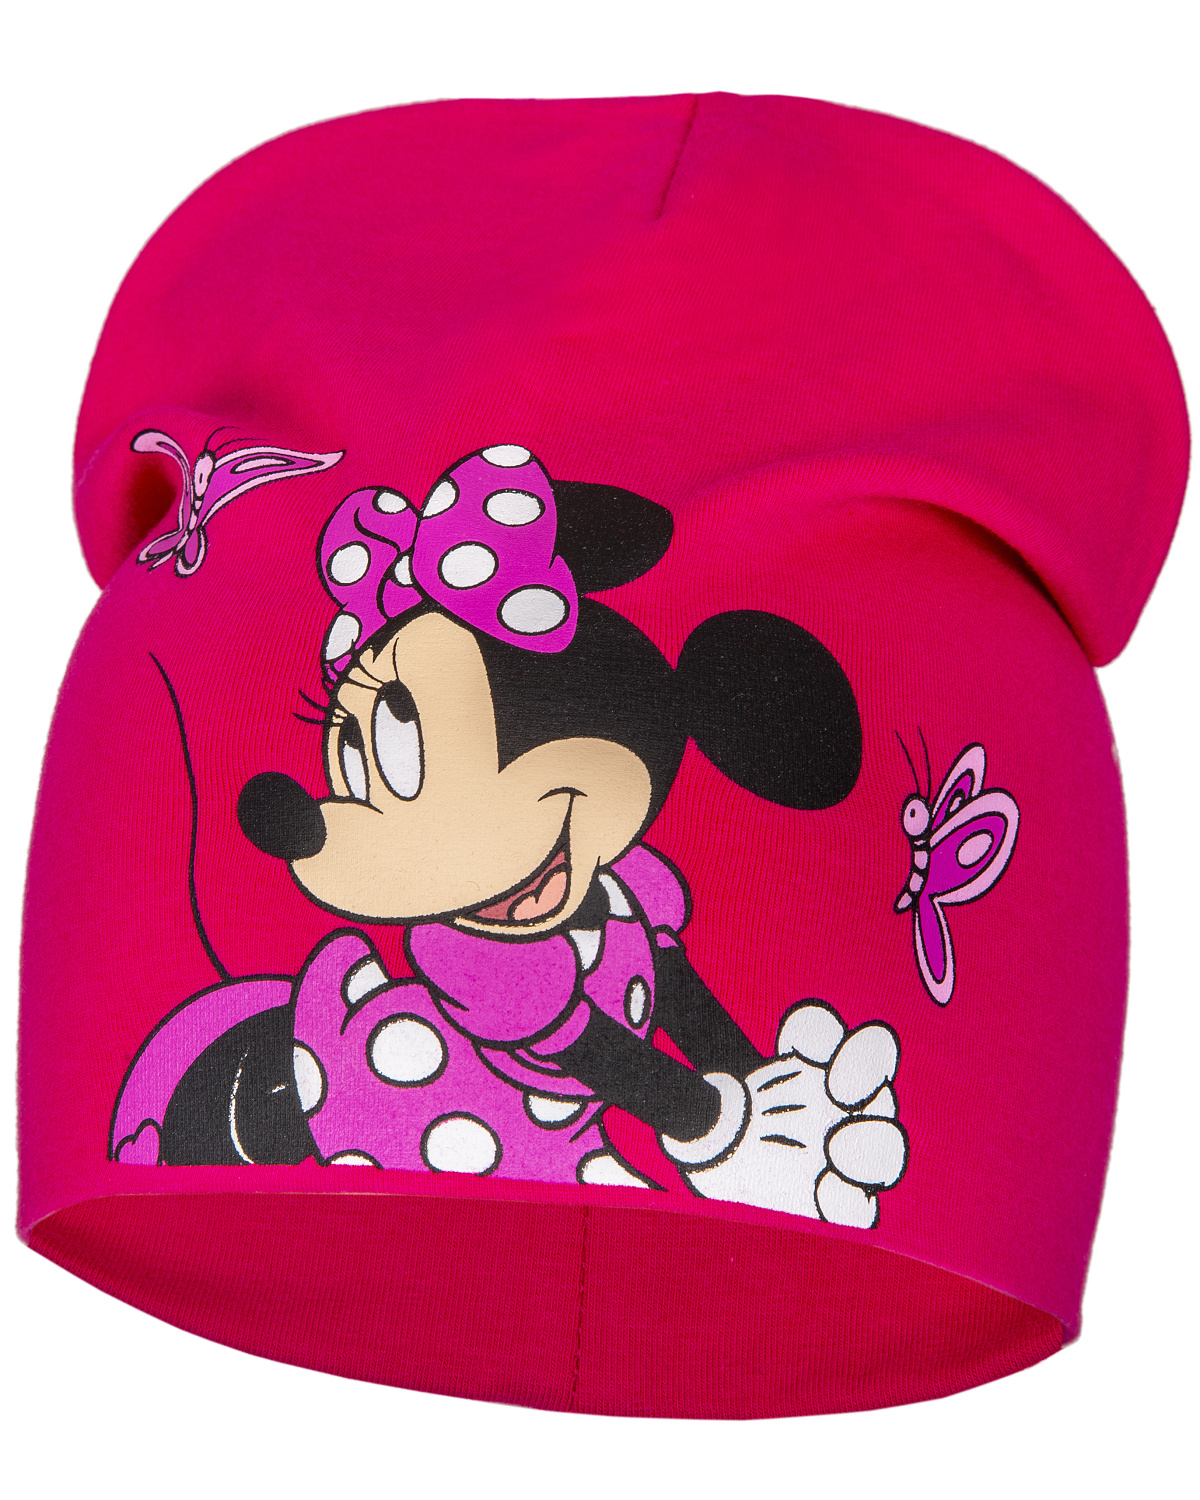 Minnie Mouse - licence Dívčí čepice - Minnie Mouse 23-1146, sytě růžová Barva: Růžová, Velikost: velikost 52